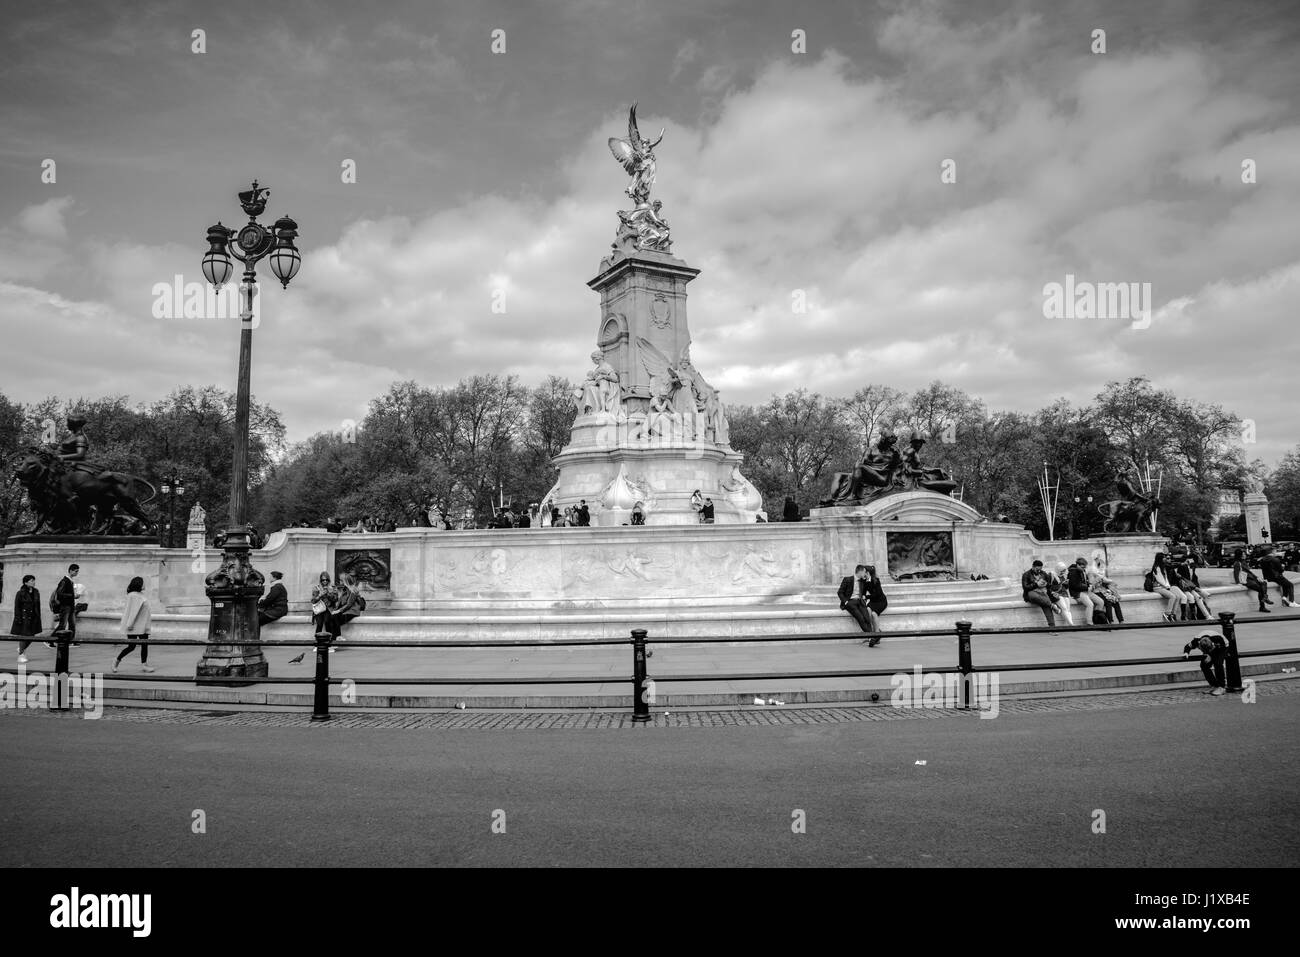 Queen Victoria Memorial, London, United Kingdom Stock Photo